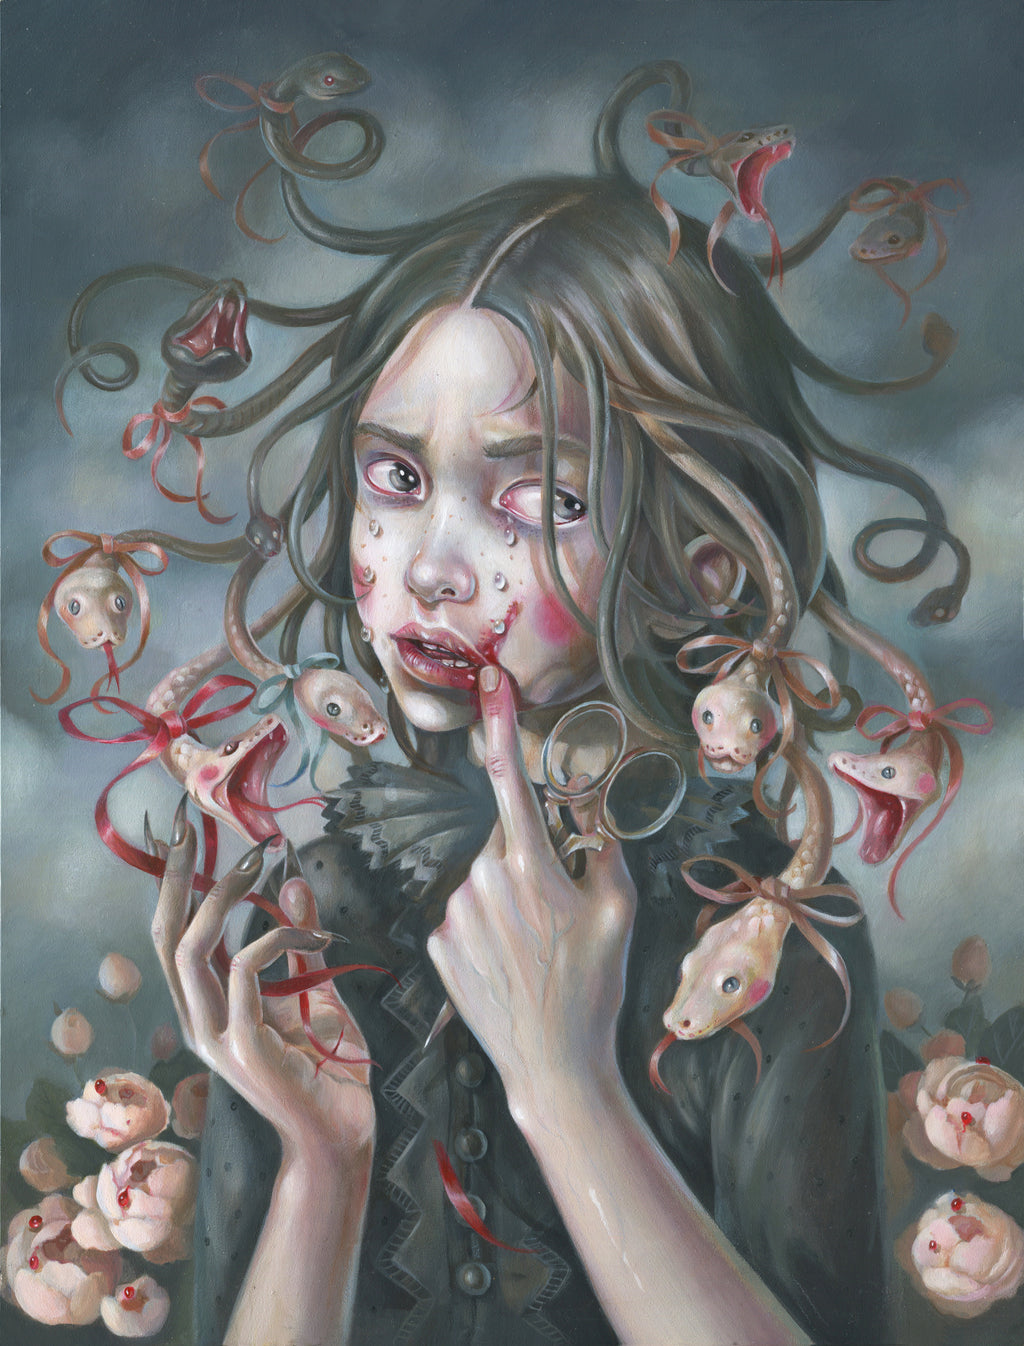 Hanna Jaeun - "Little Medusa"